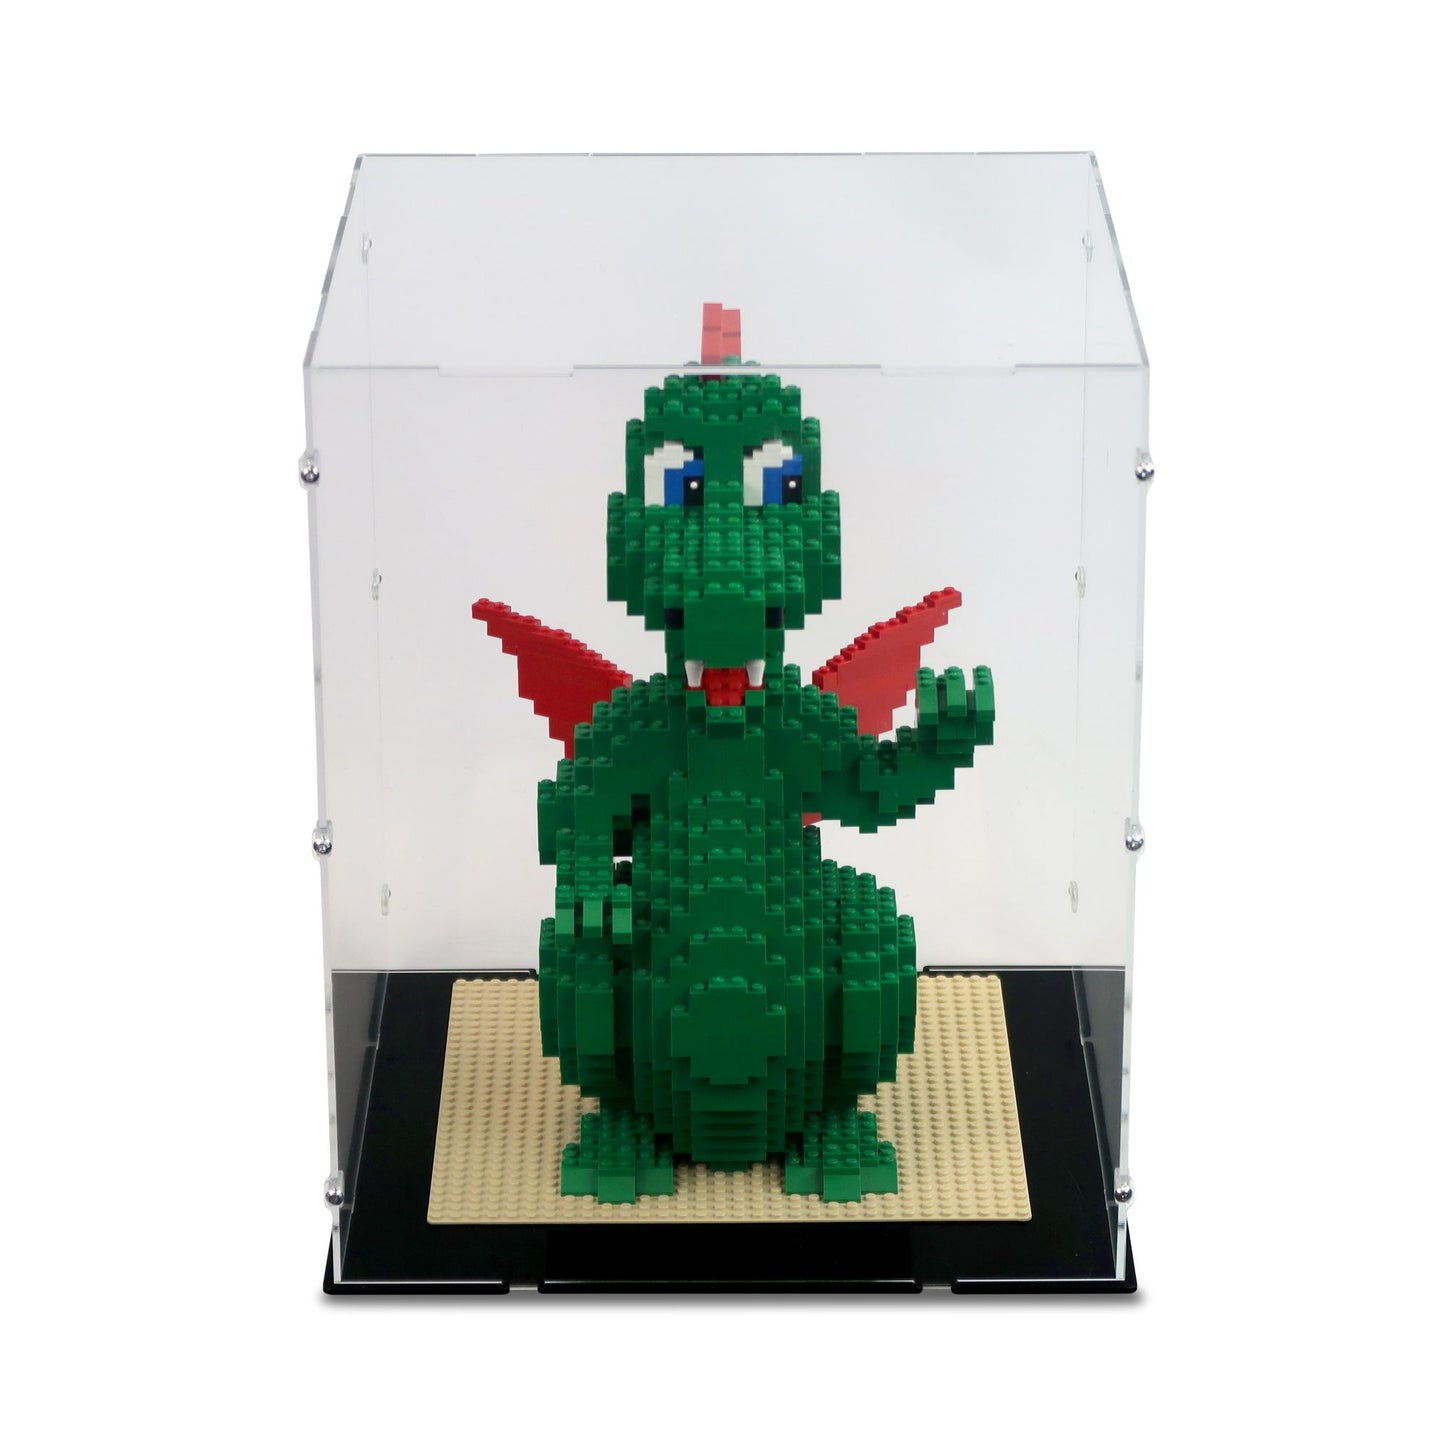 3724 LEGO® Dragon Display Case